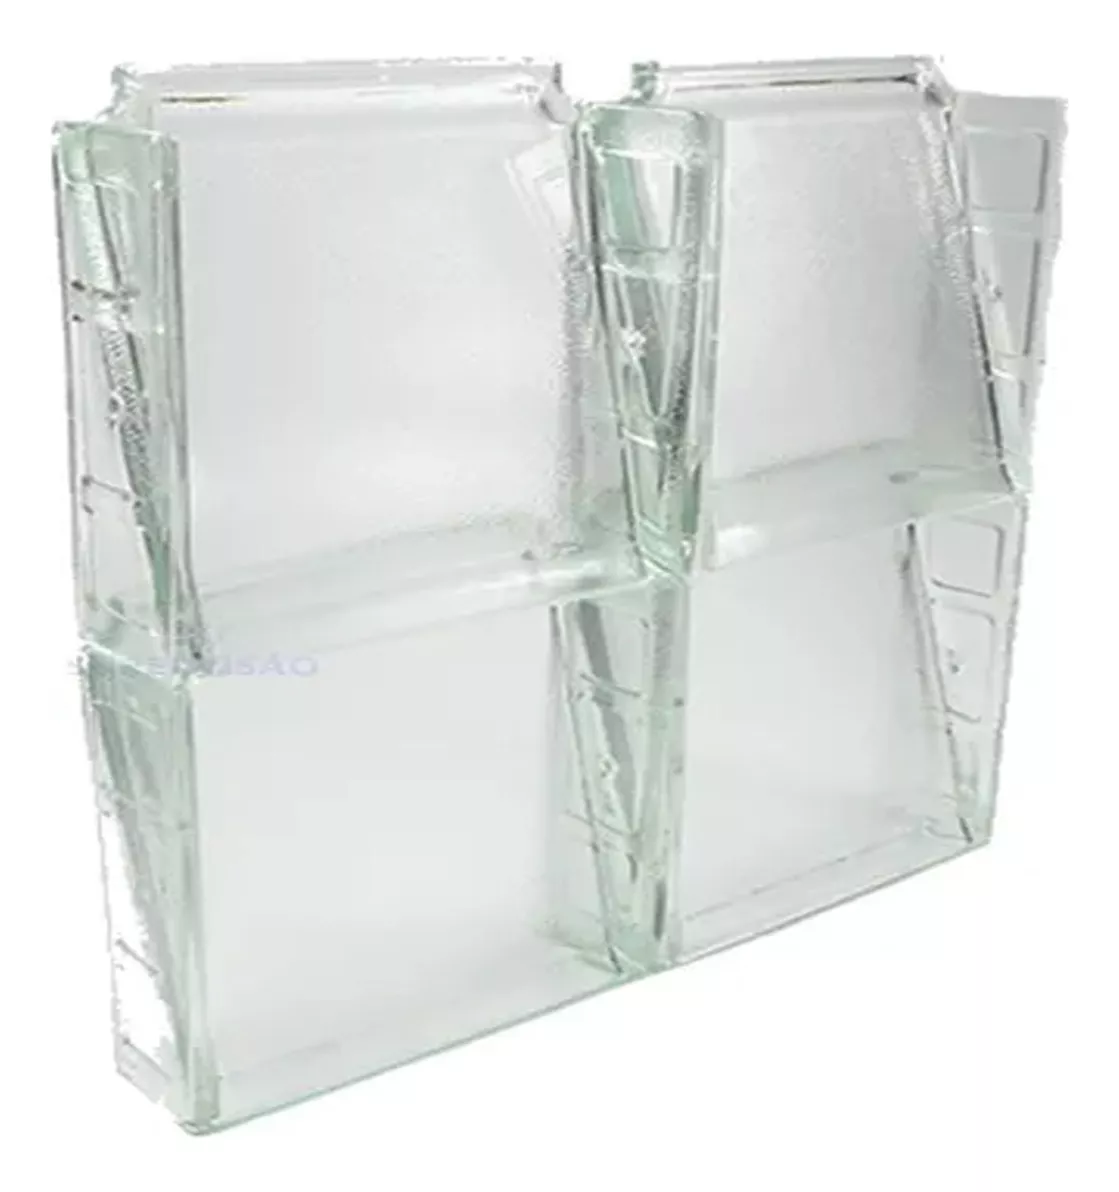 Segunda imagem para pesquisa de bloco de vidro